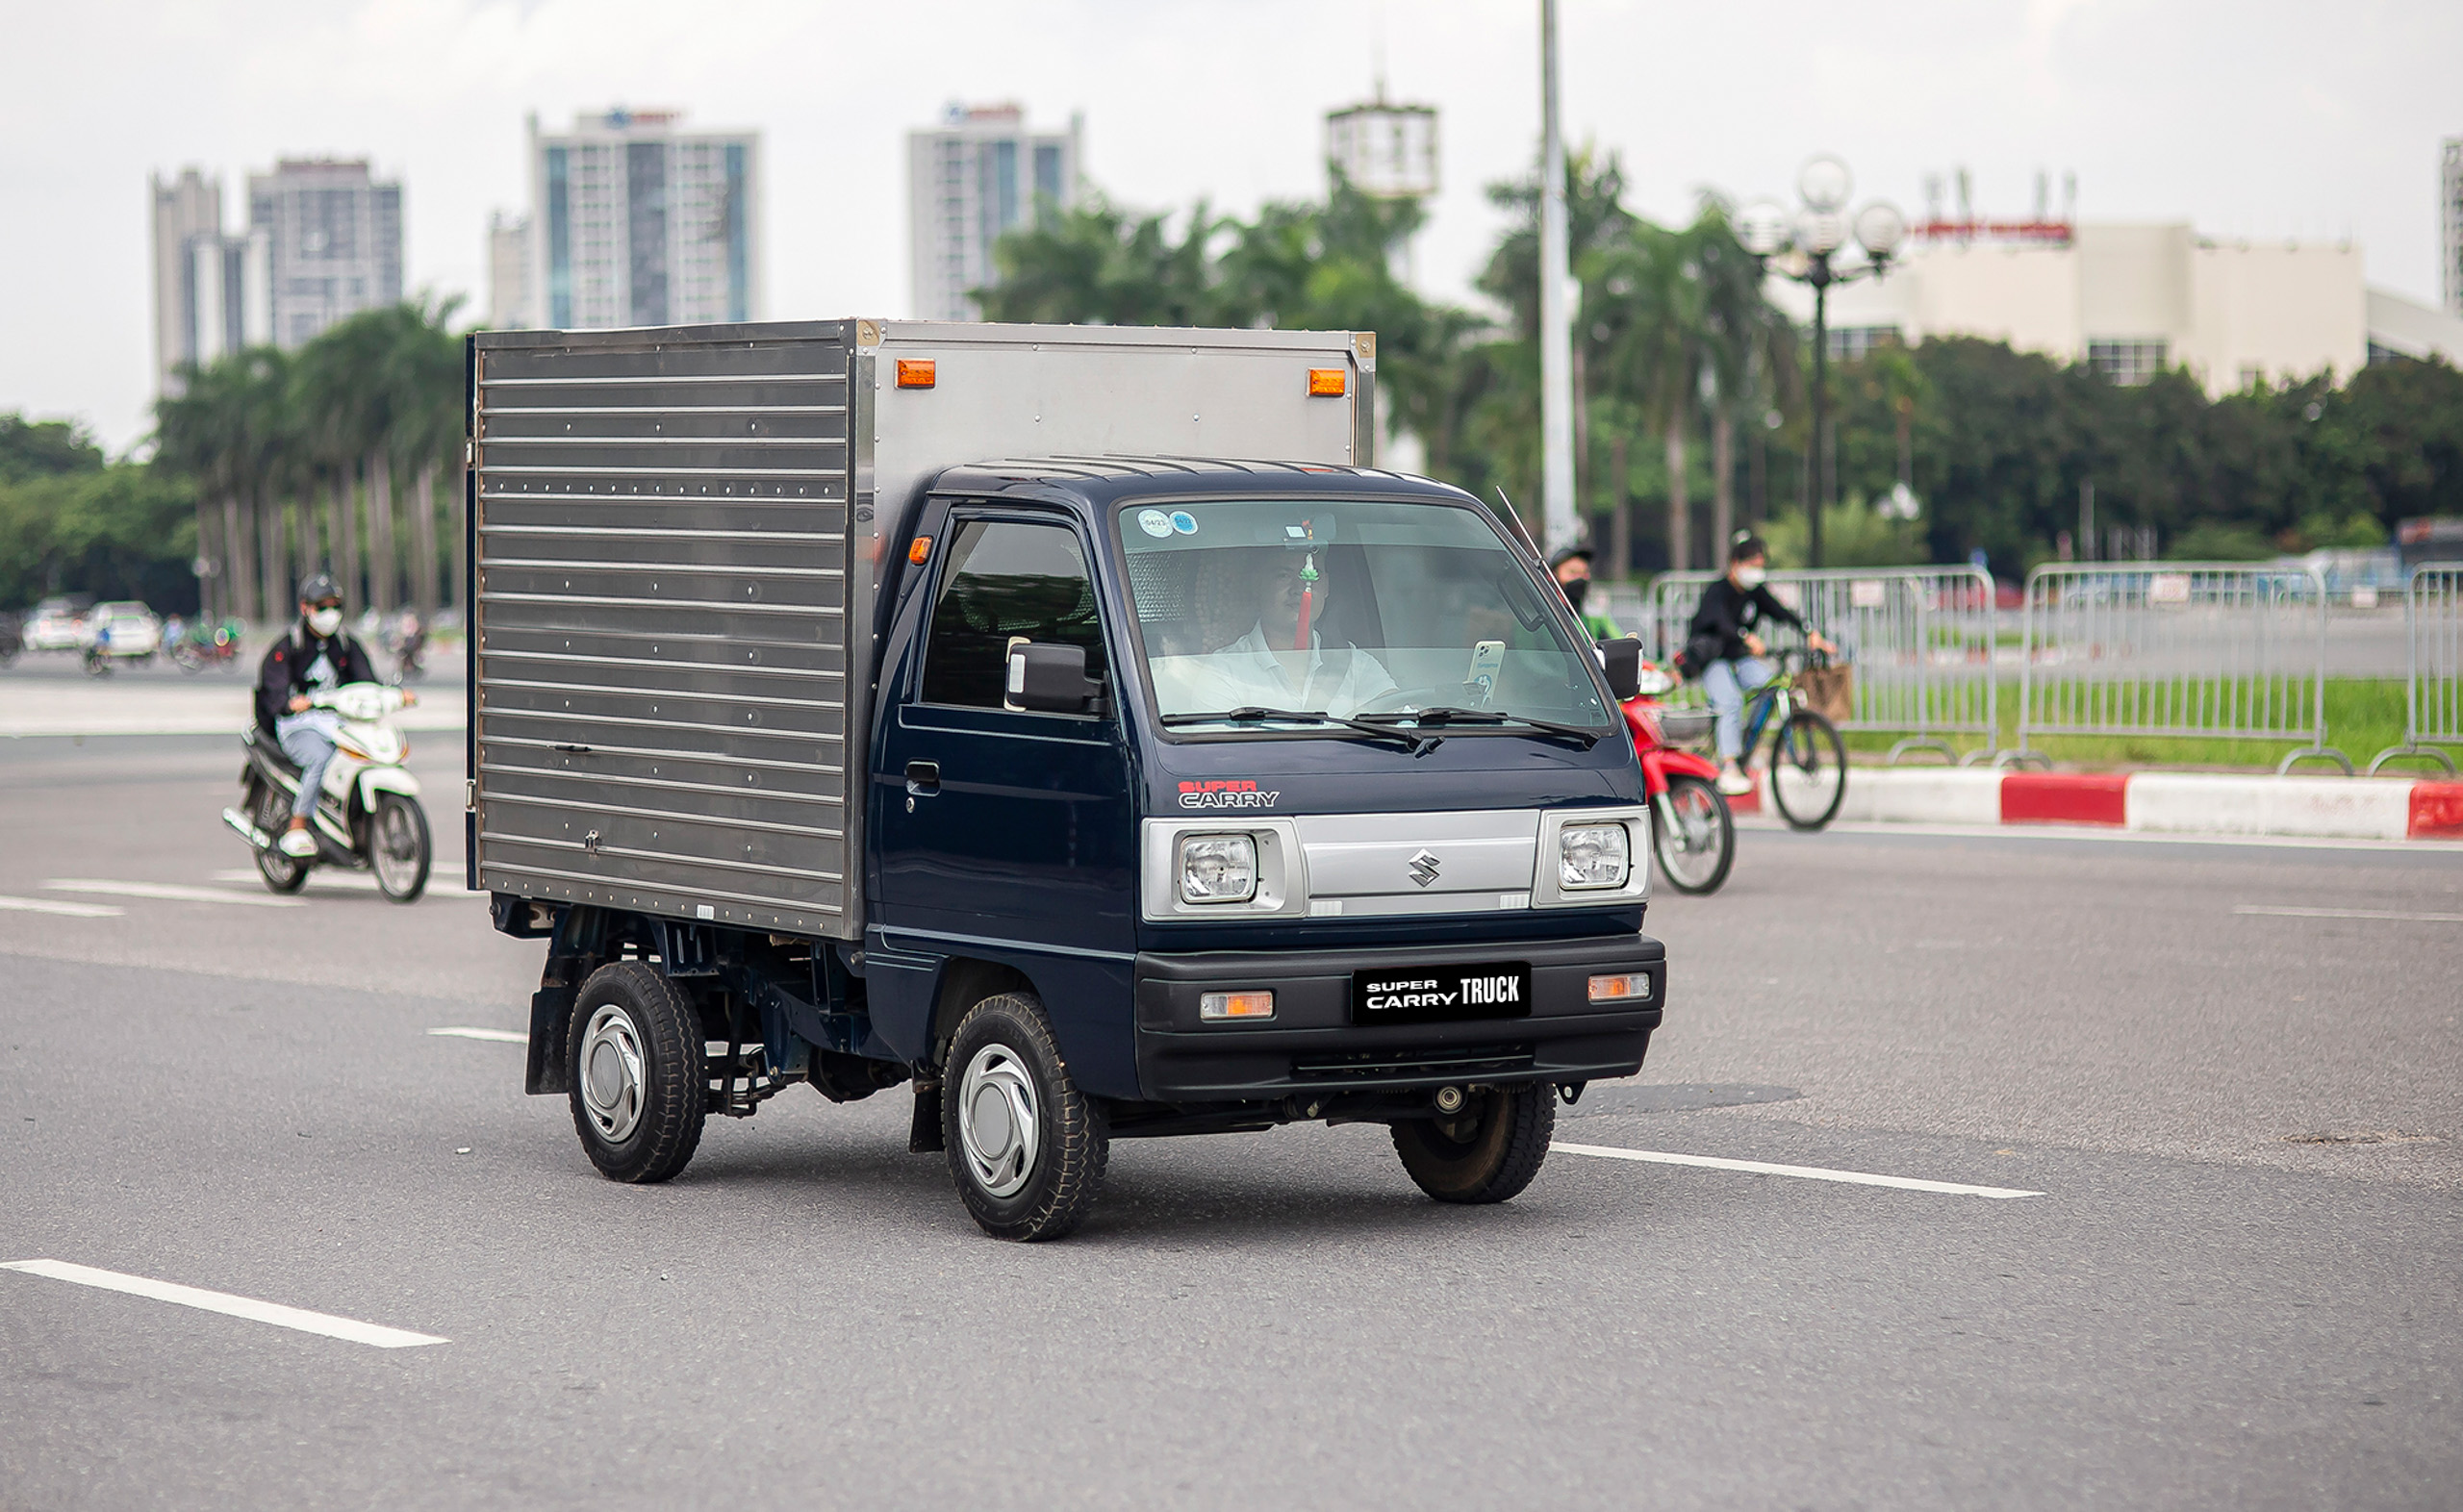 Mua xe Suzuki trong tháng 10: Tận hưởng trọn vẹn chuyến đi với ưu đãi đến 30 triệu